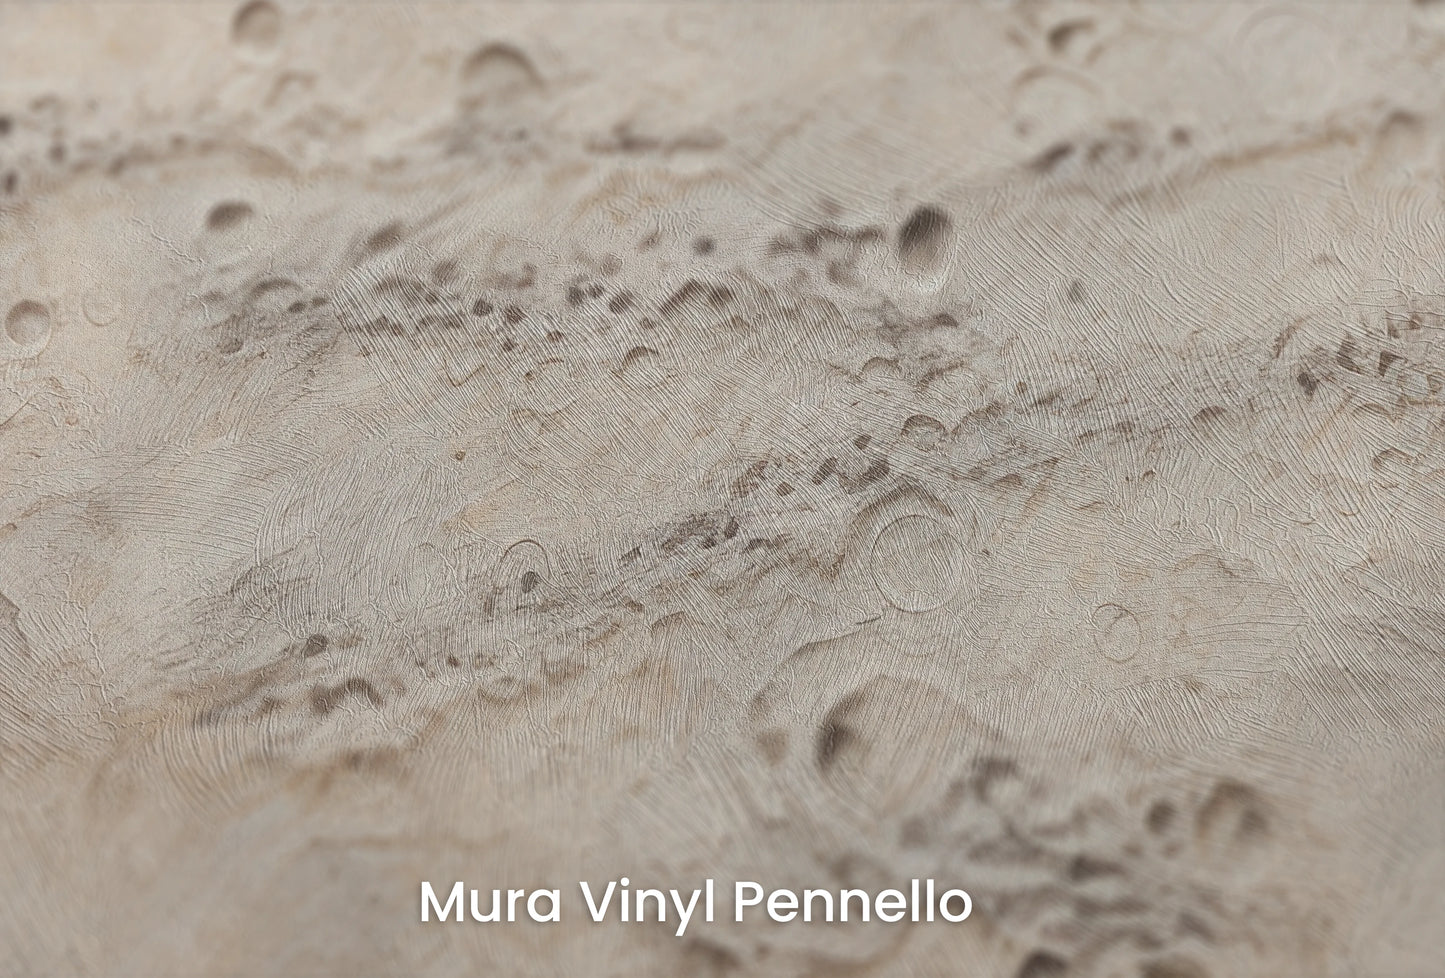 Zbliżenie na artystyczną fototapetę o nazwie Lunar Terrain na podłożu Mura Vinyl Pennello - faktura pociągnięć pędzla malarskiego.